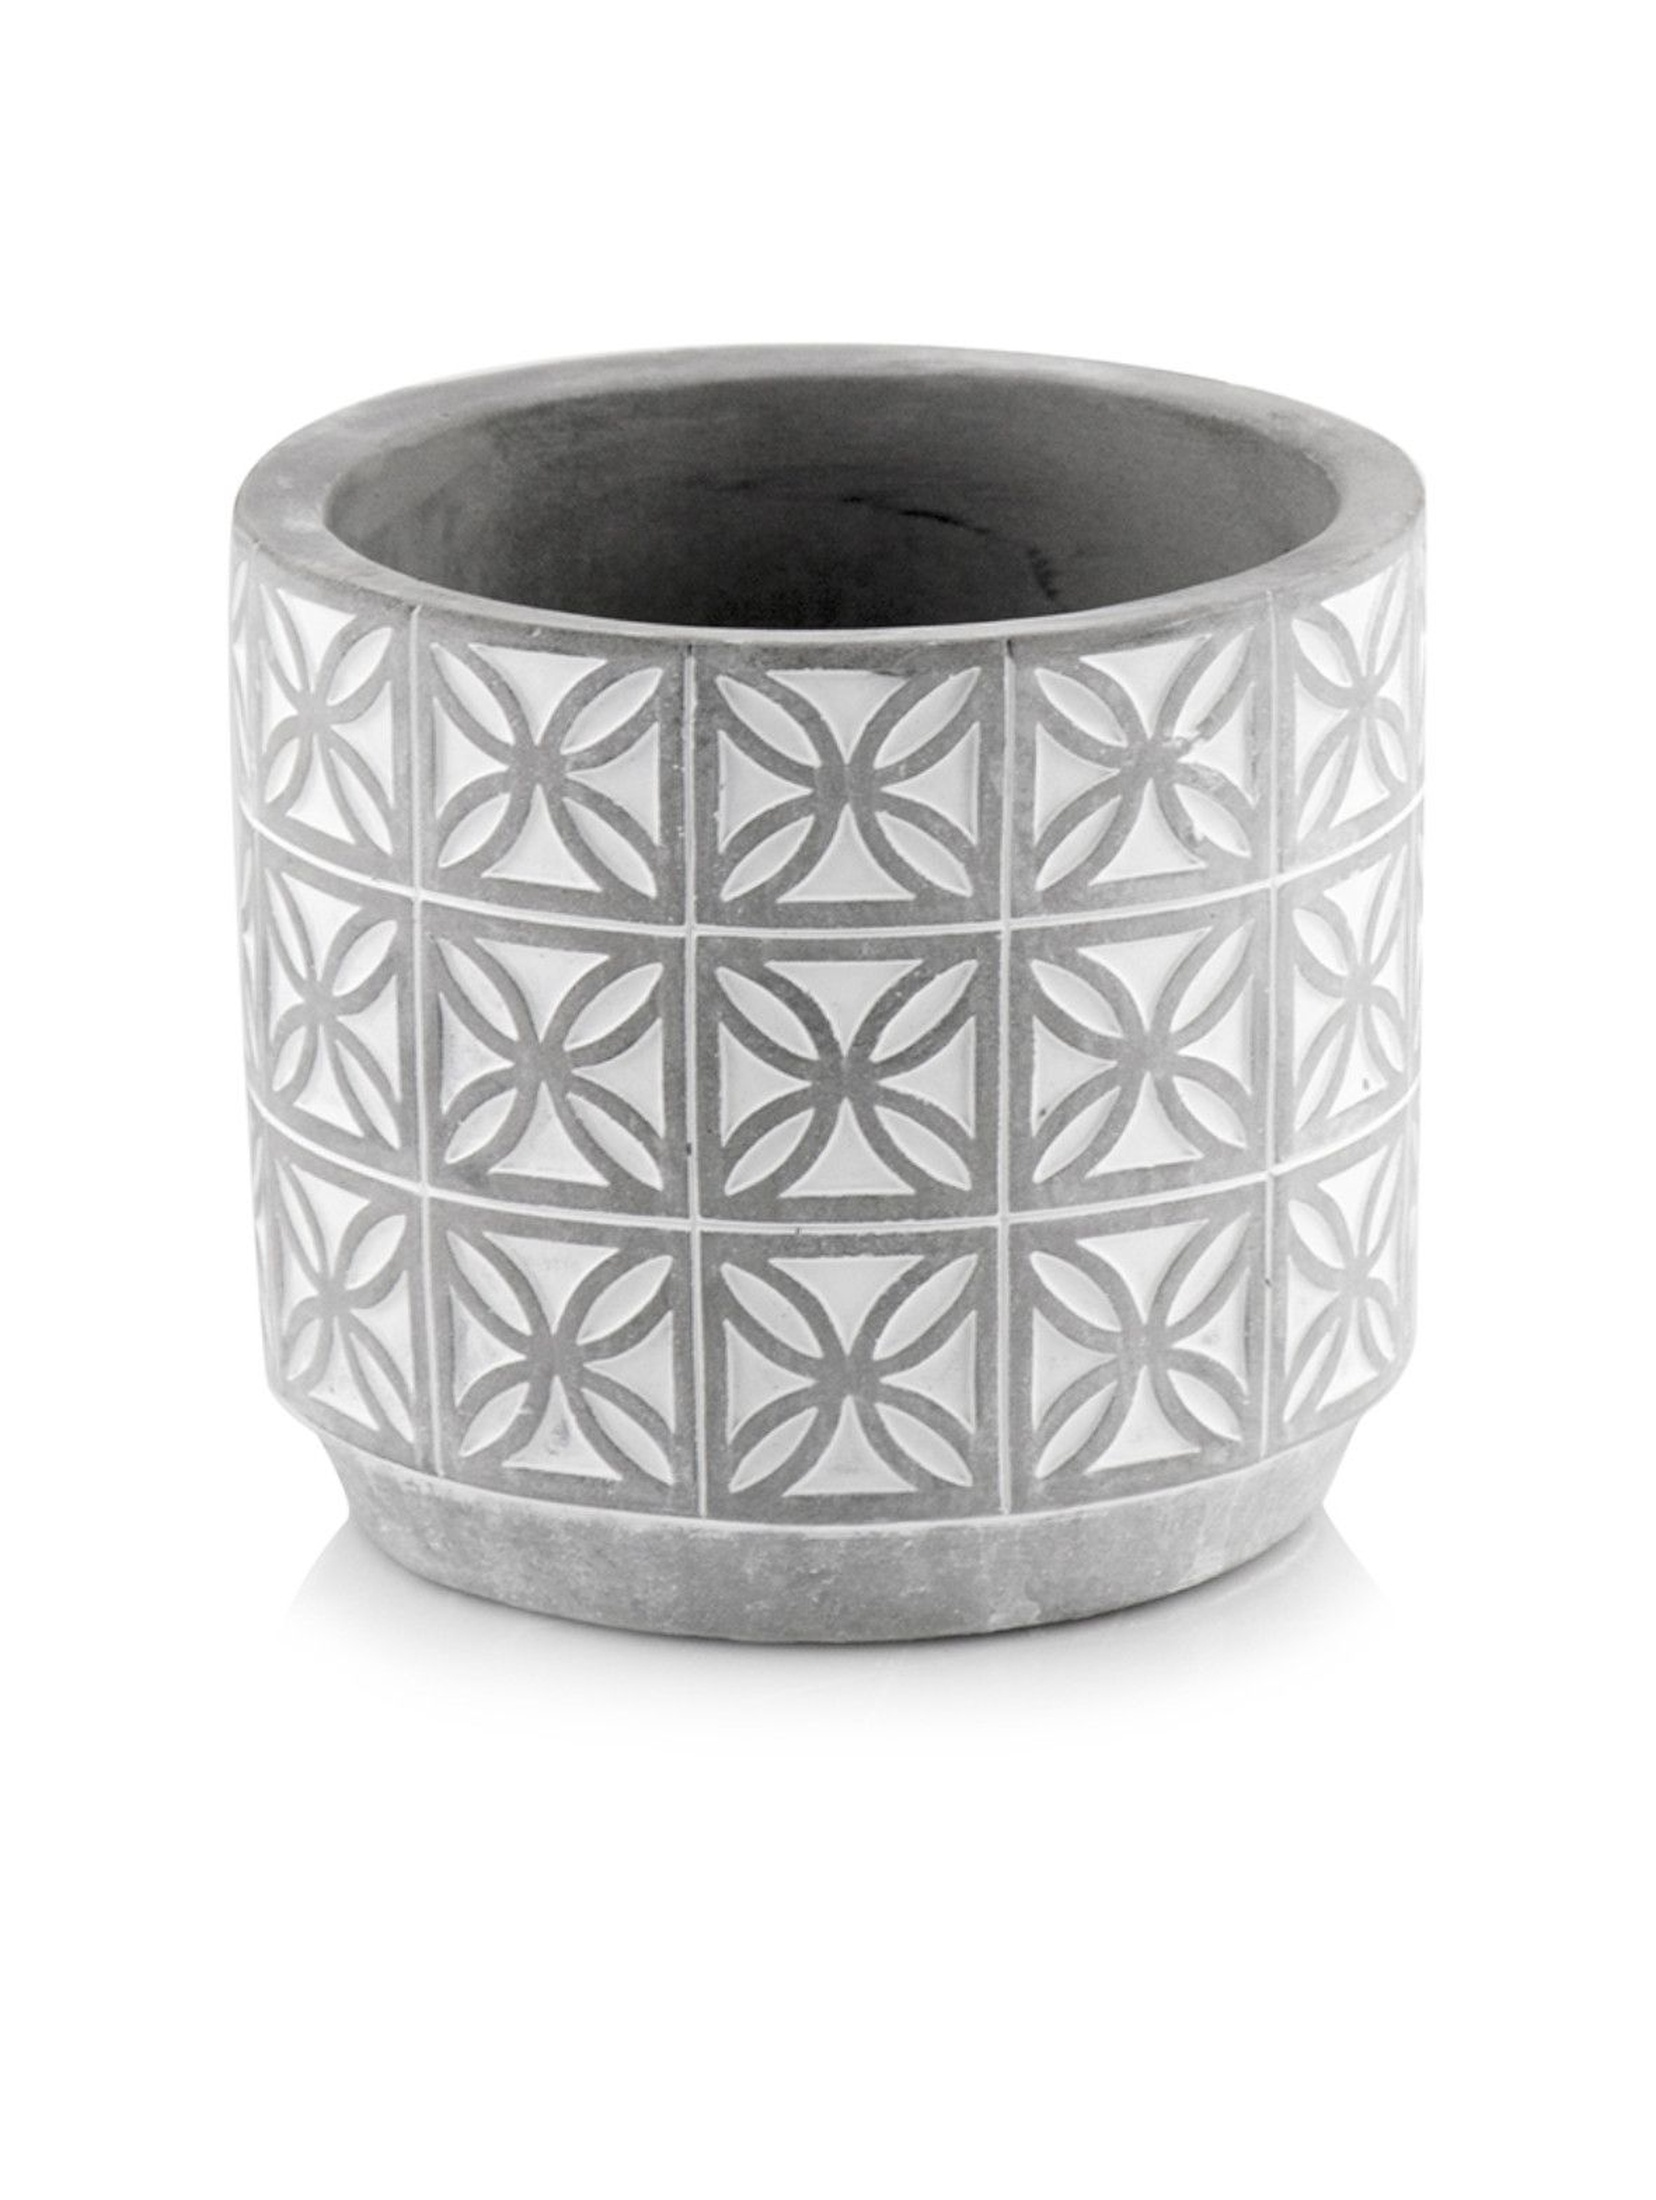 Donica ceramiczna w kształcie cylindra - szara